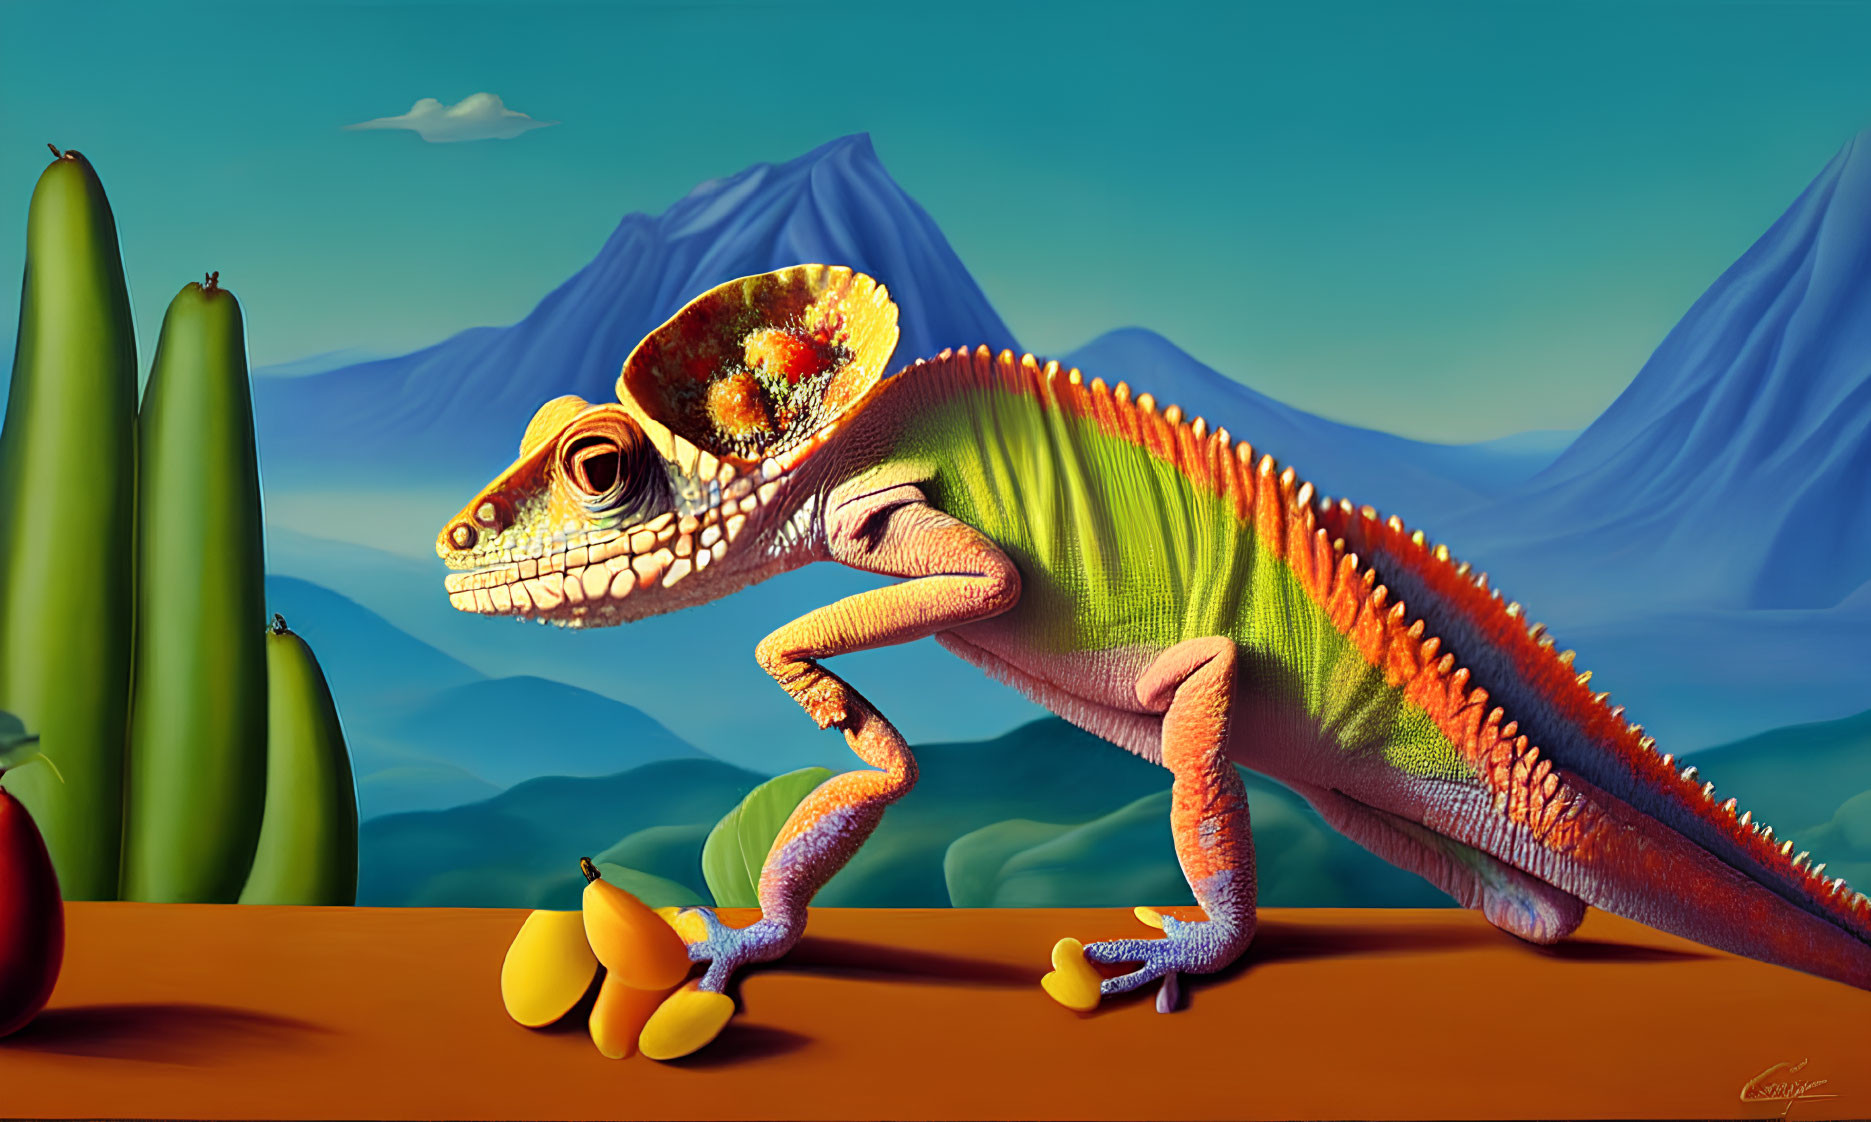 Vibrant digital artwork: Chameleon among fruits, desert hills, cactus.